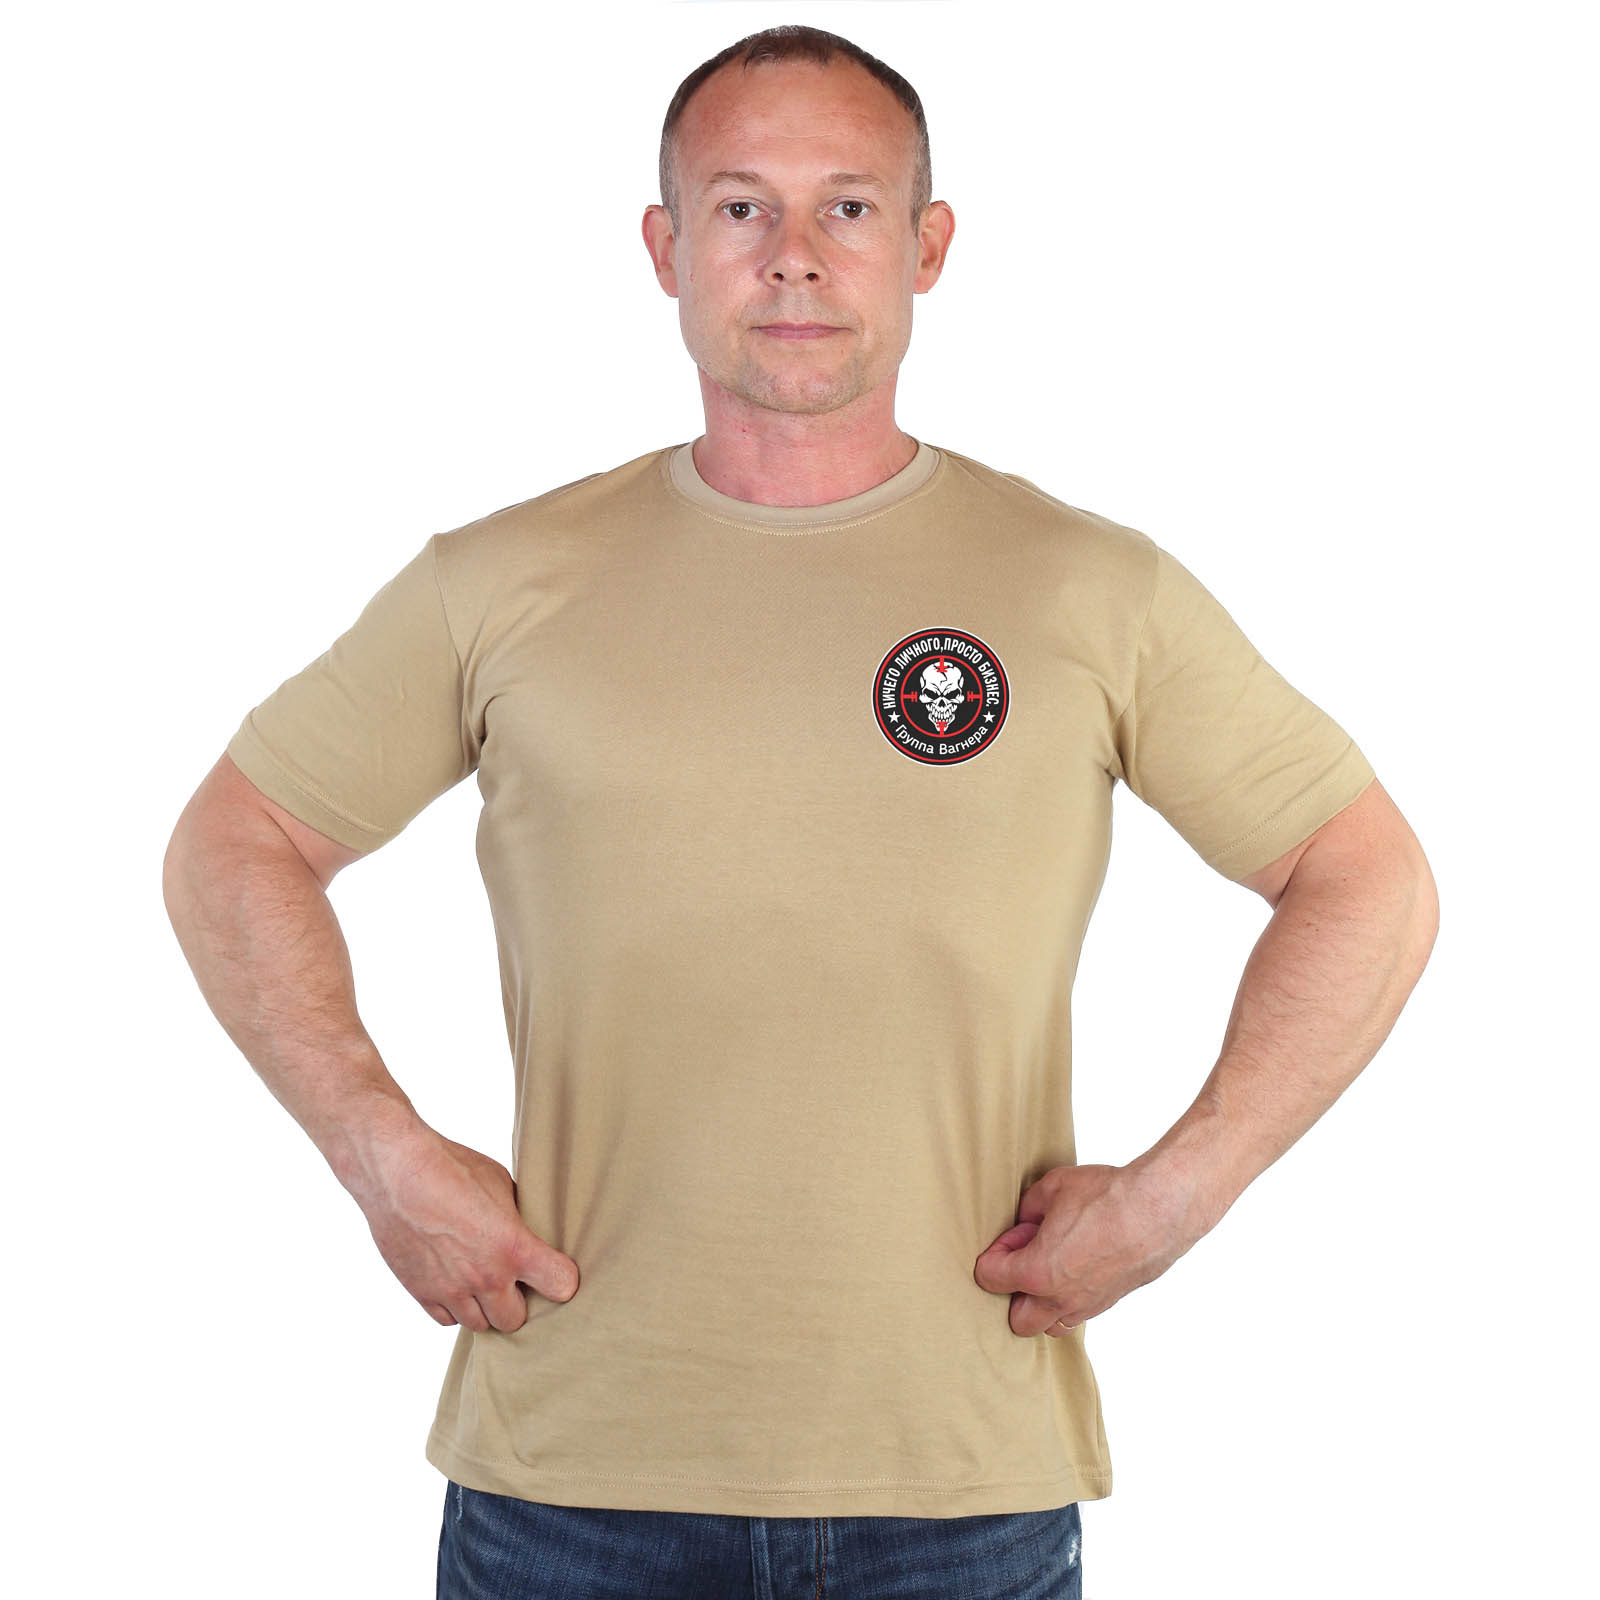 Песочная футболка с термотрансфером ЧВК "Группа Вагнера"